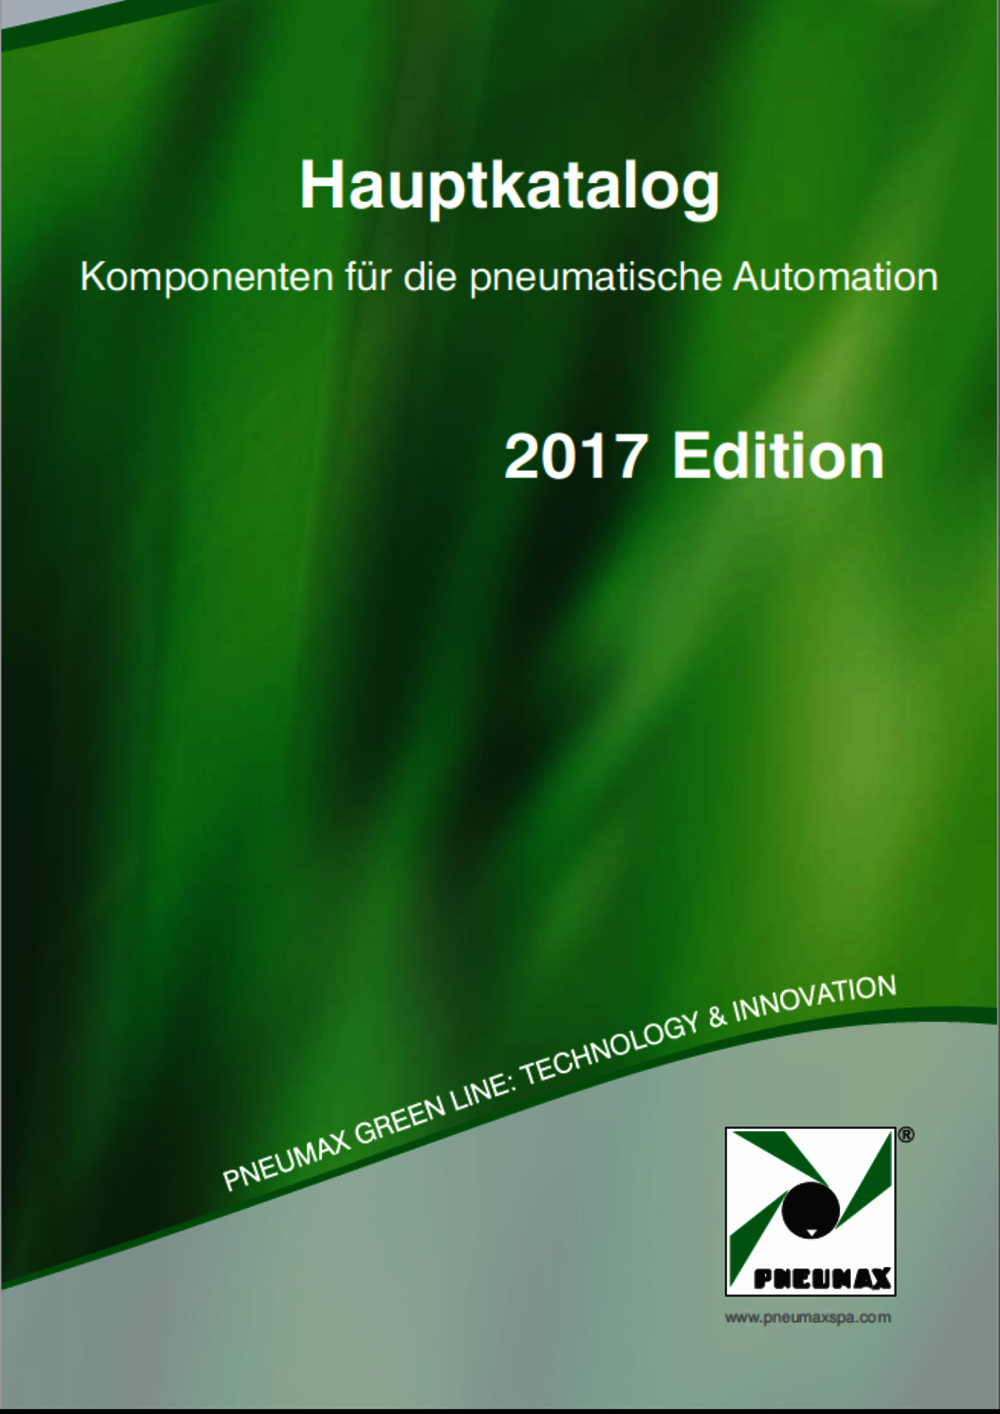 Pneumax Hauptkatalog 2017 Edition